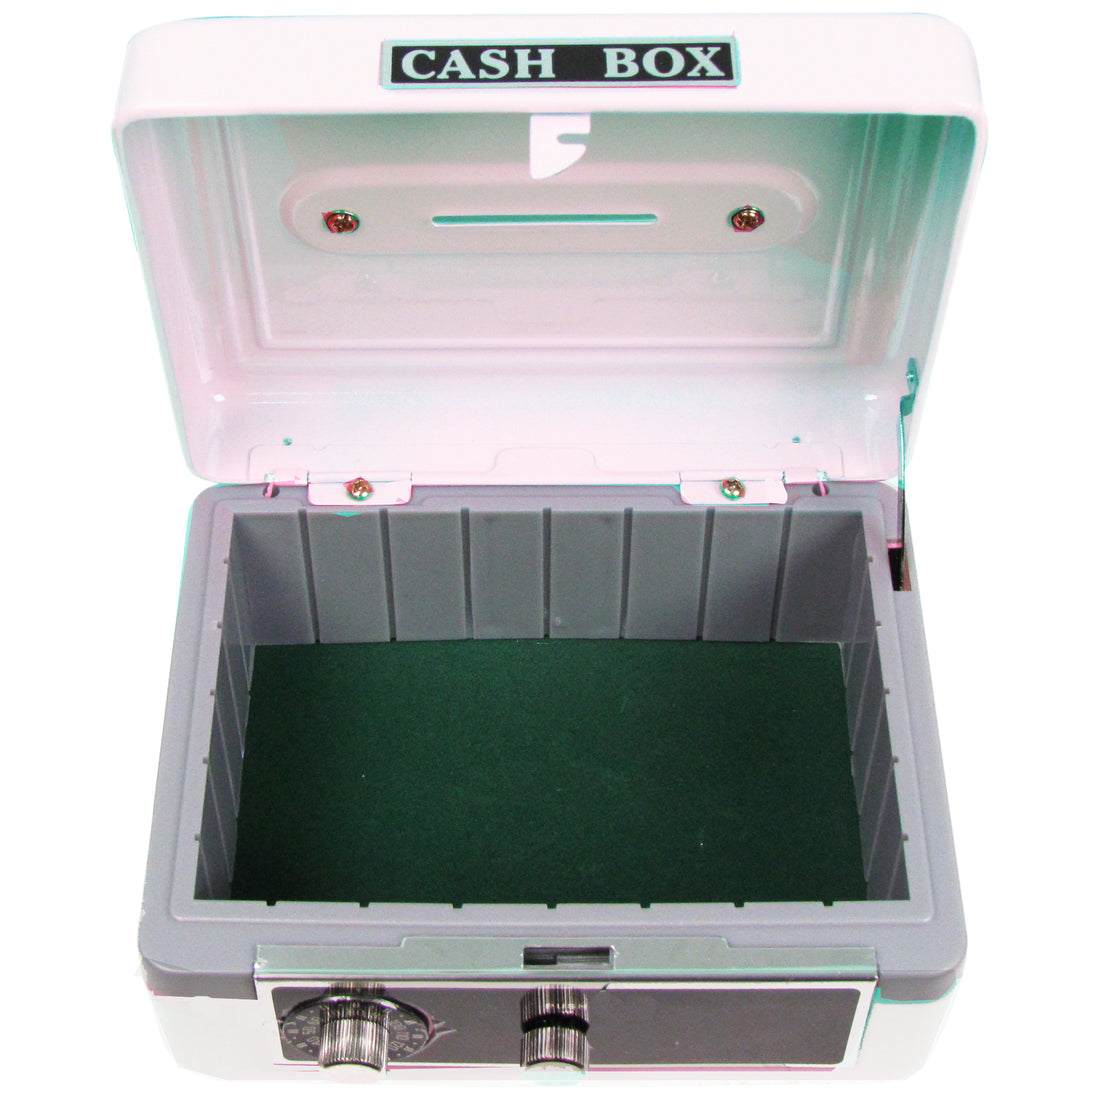 Personalized White Cash Box with Swim design